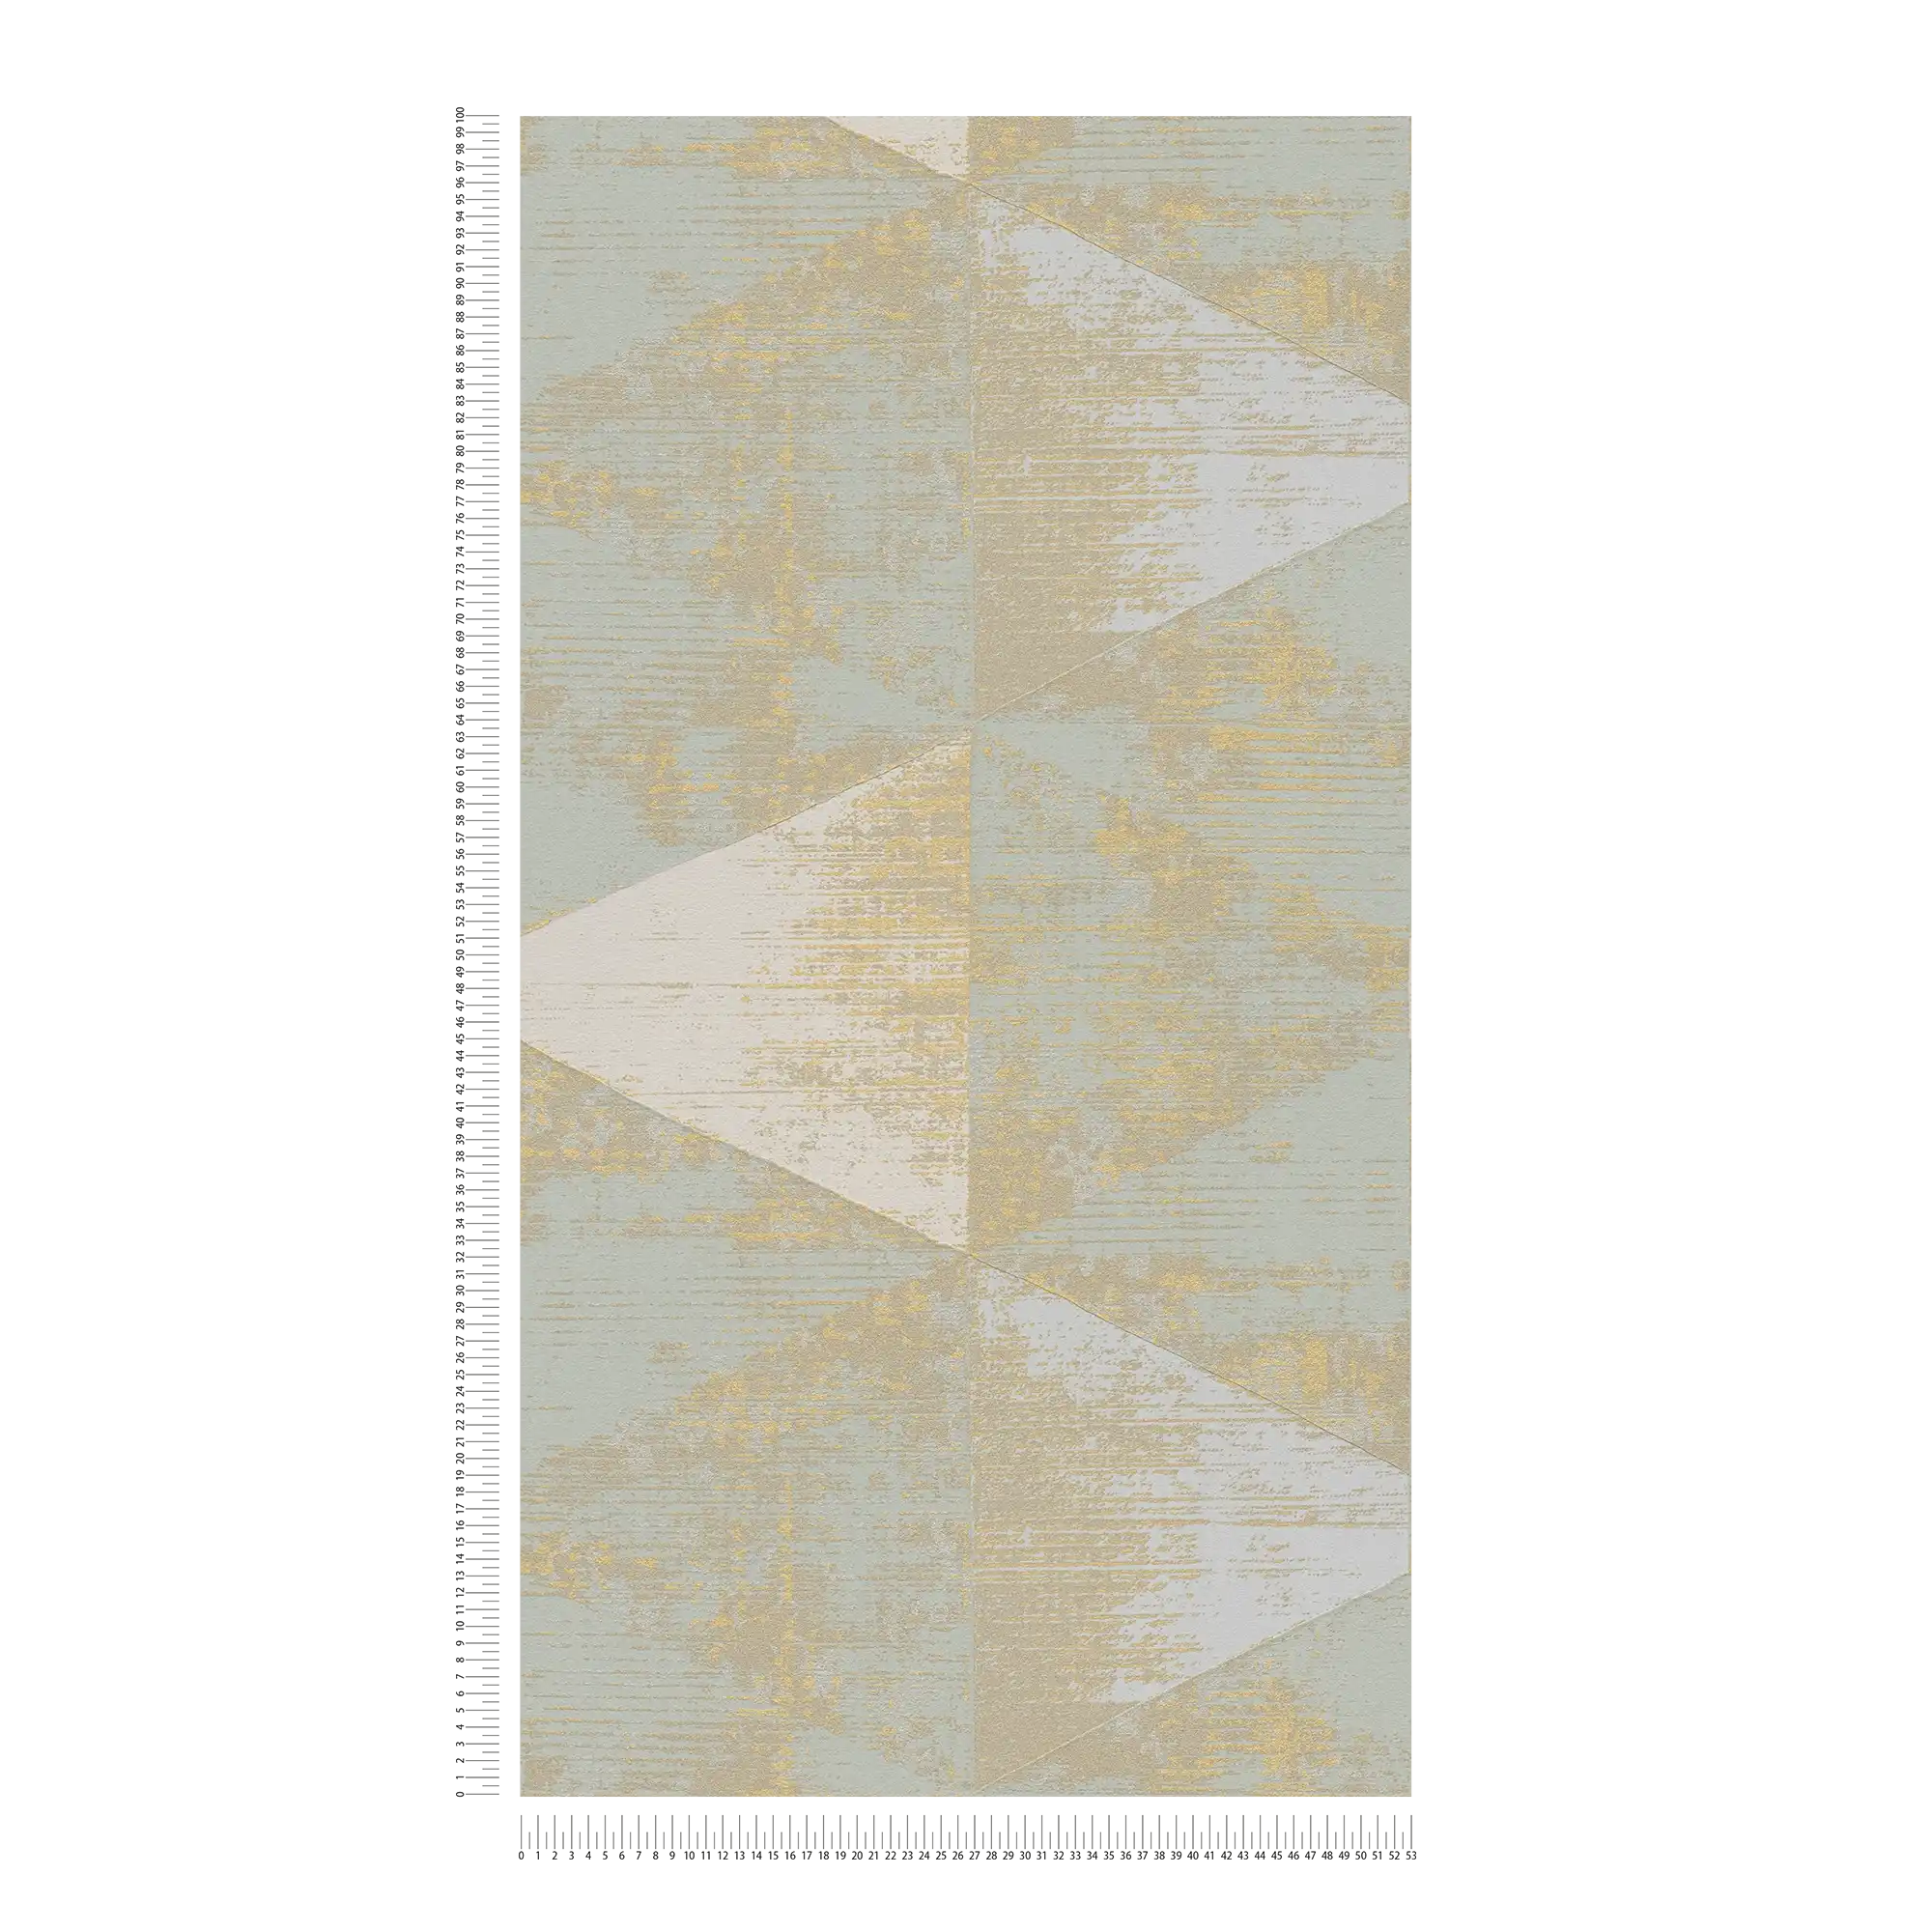             Papier peint intissé Motif à facettes avec accent métallique - métallique, crème, beige
        